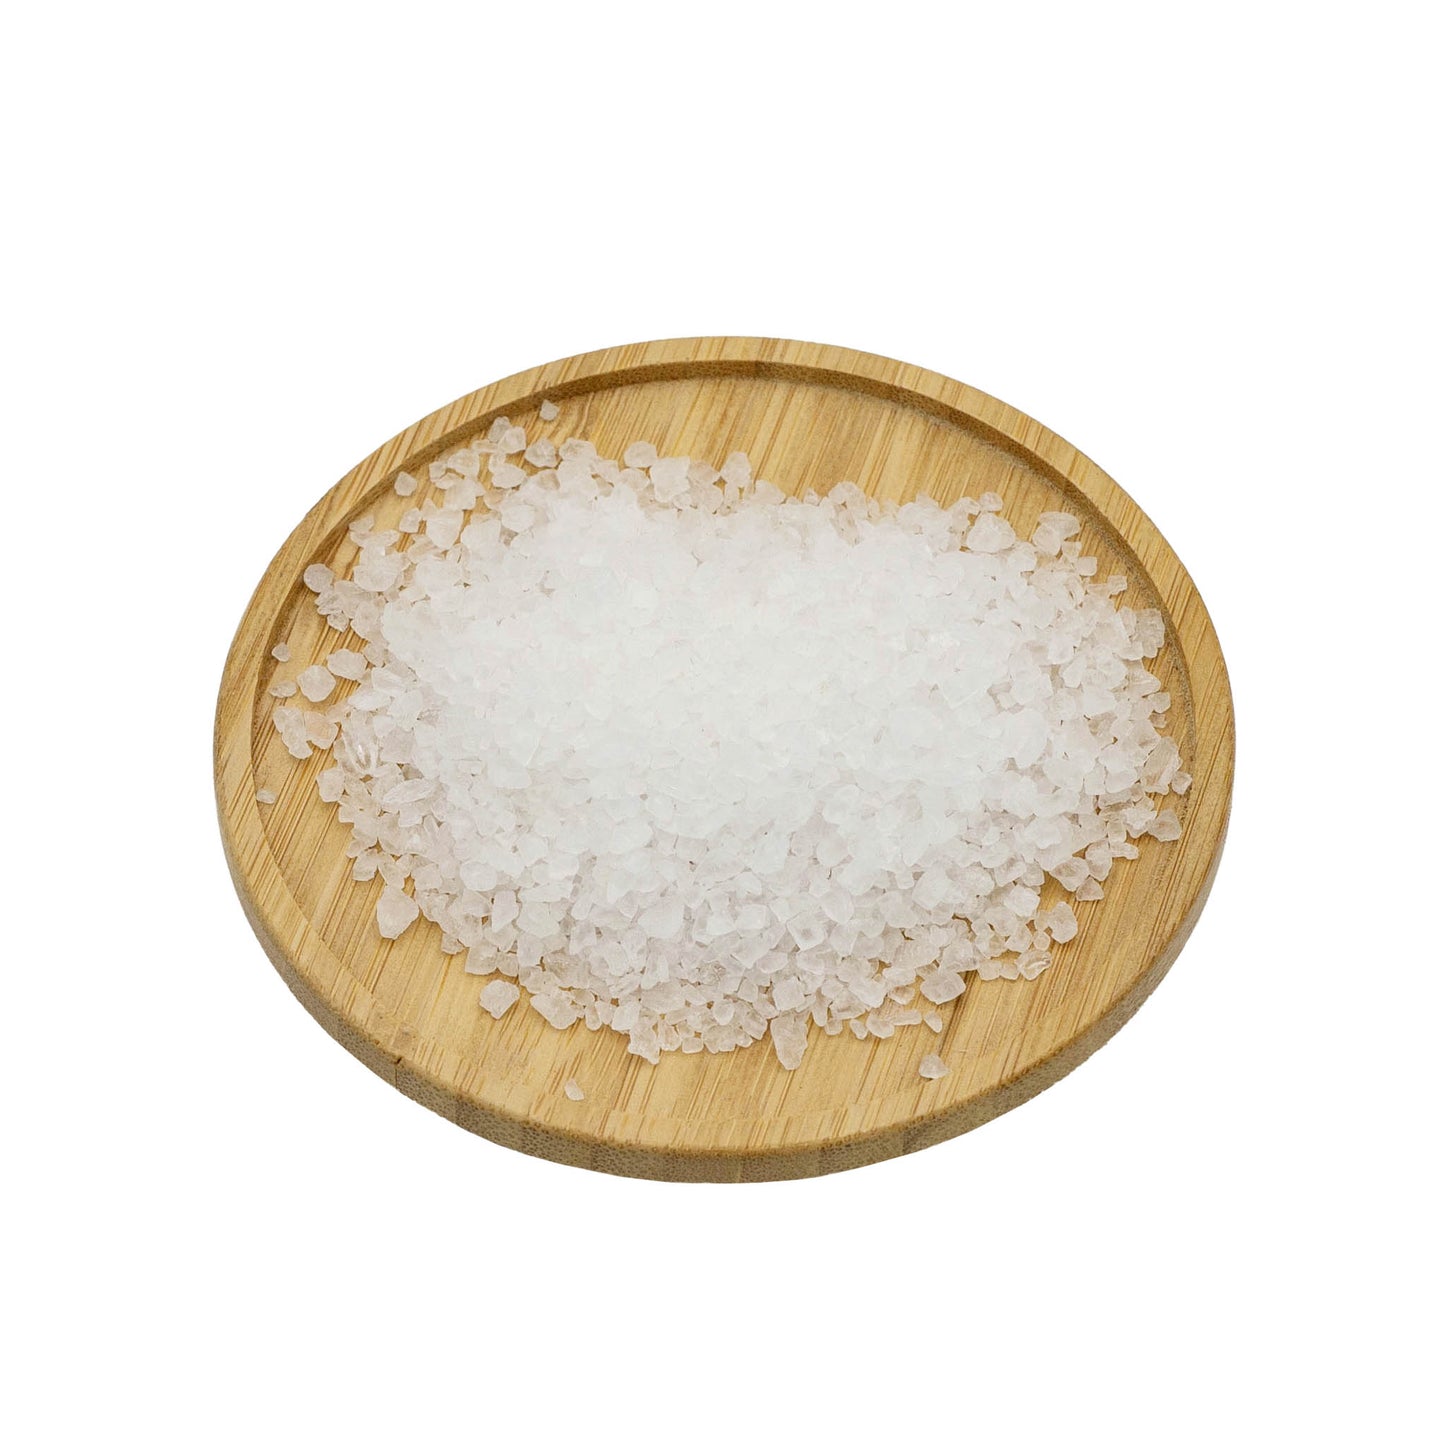 5kg bag of coarse sea salt